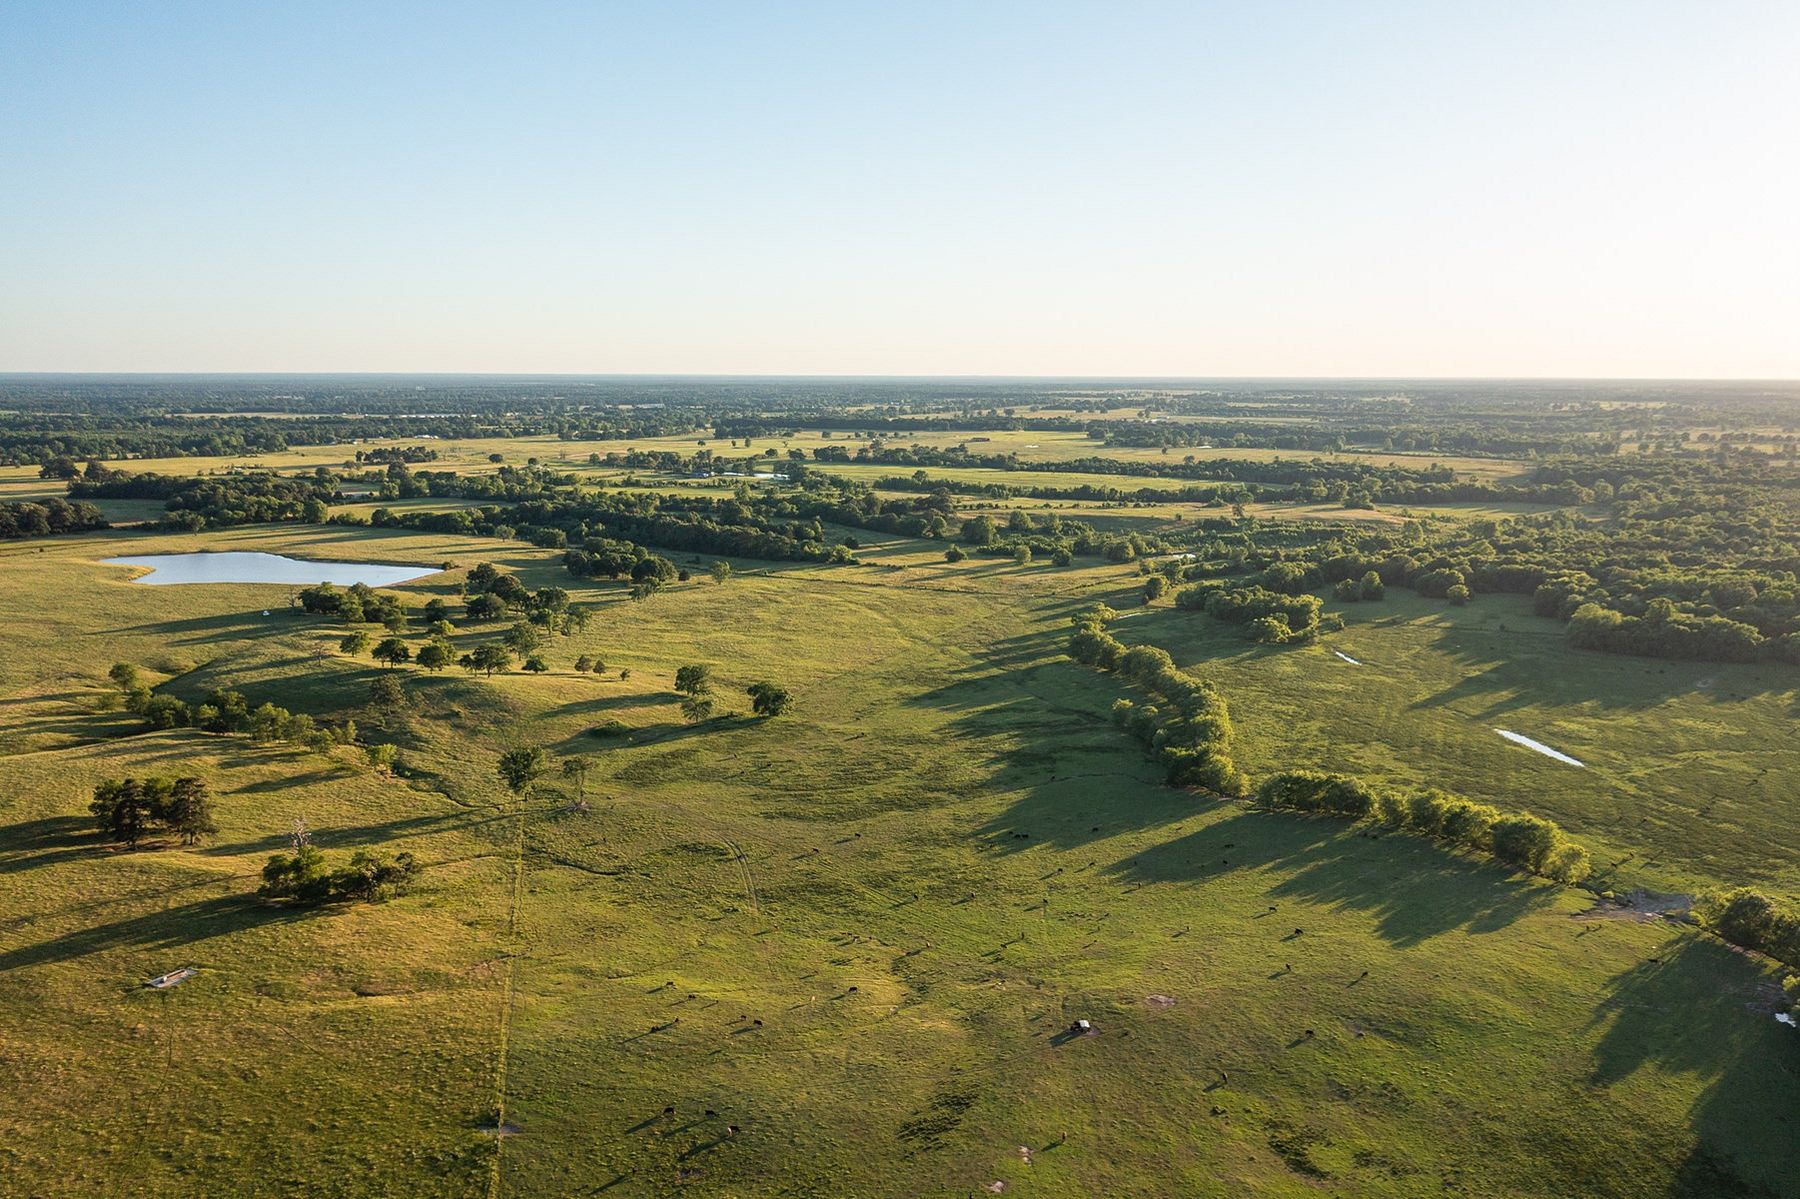 810 Acres of Land for Sale in De Kalb, Texas